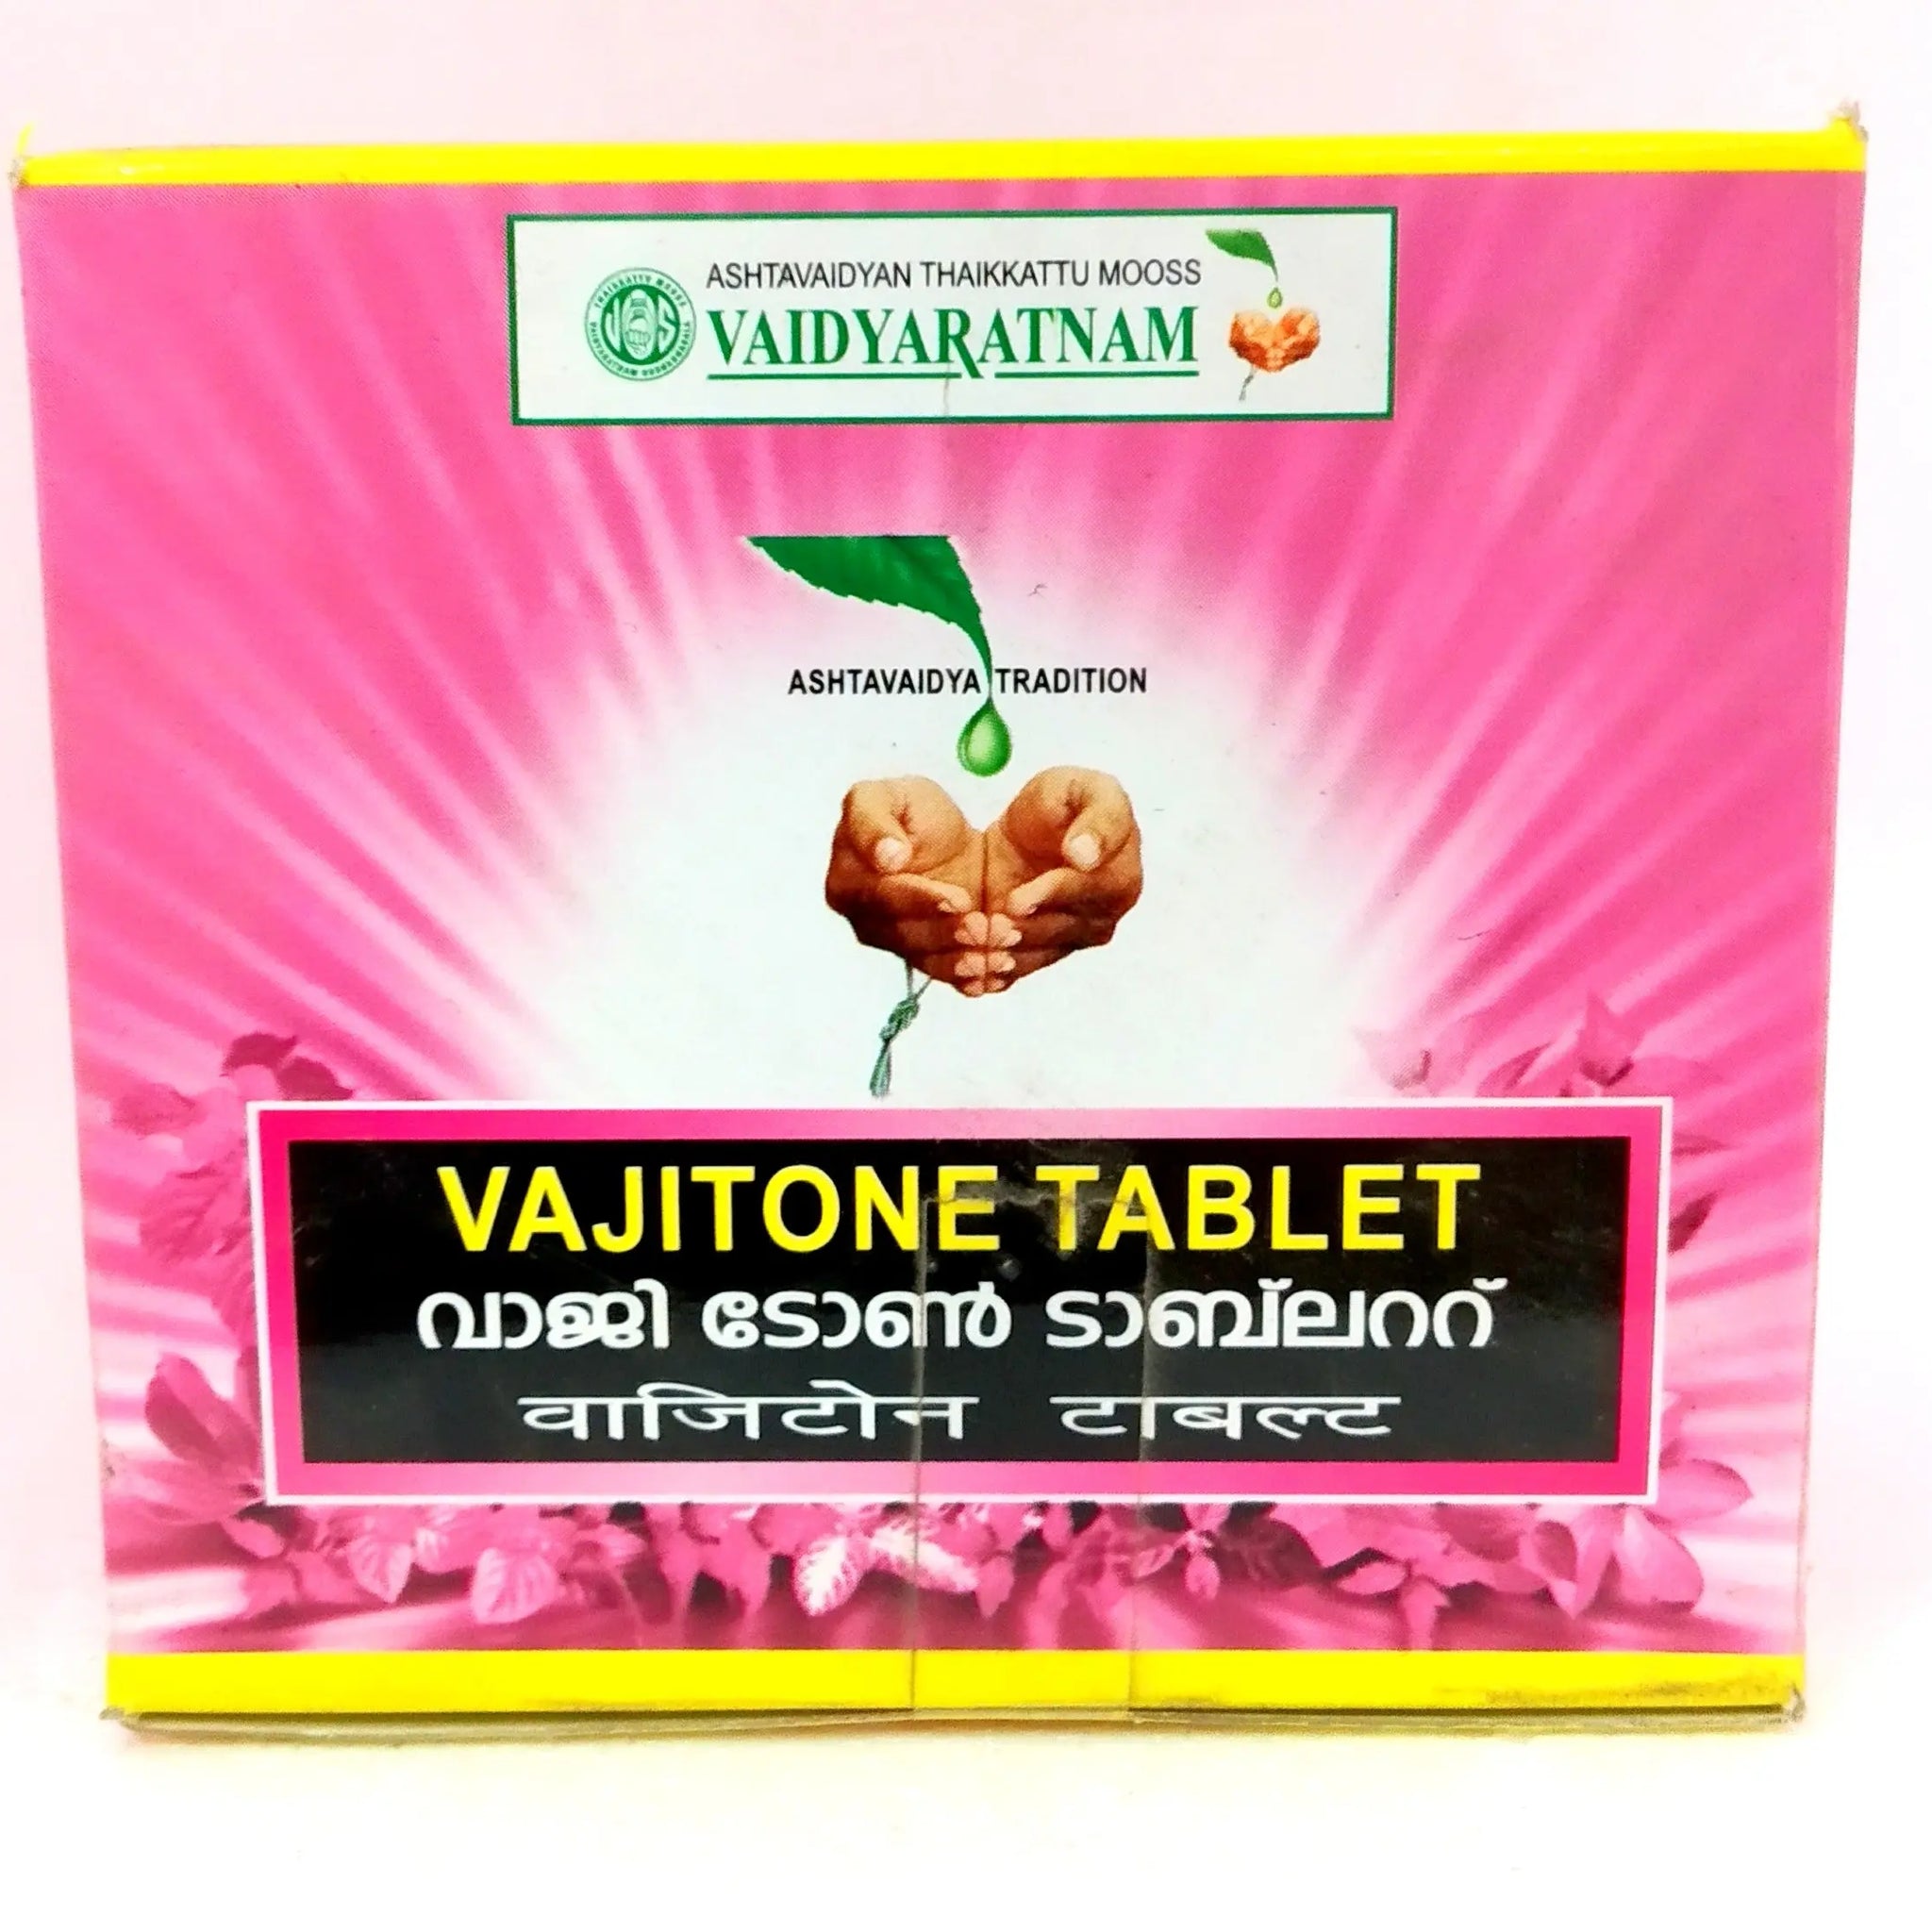 Vajitone Tablets 10Tablets Vaidyaratnam